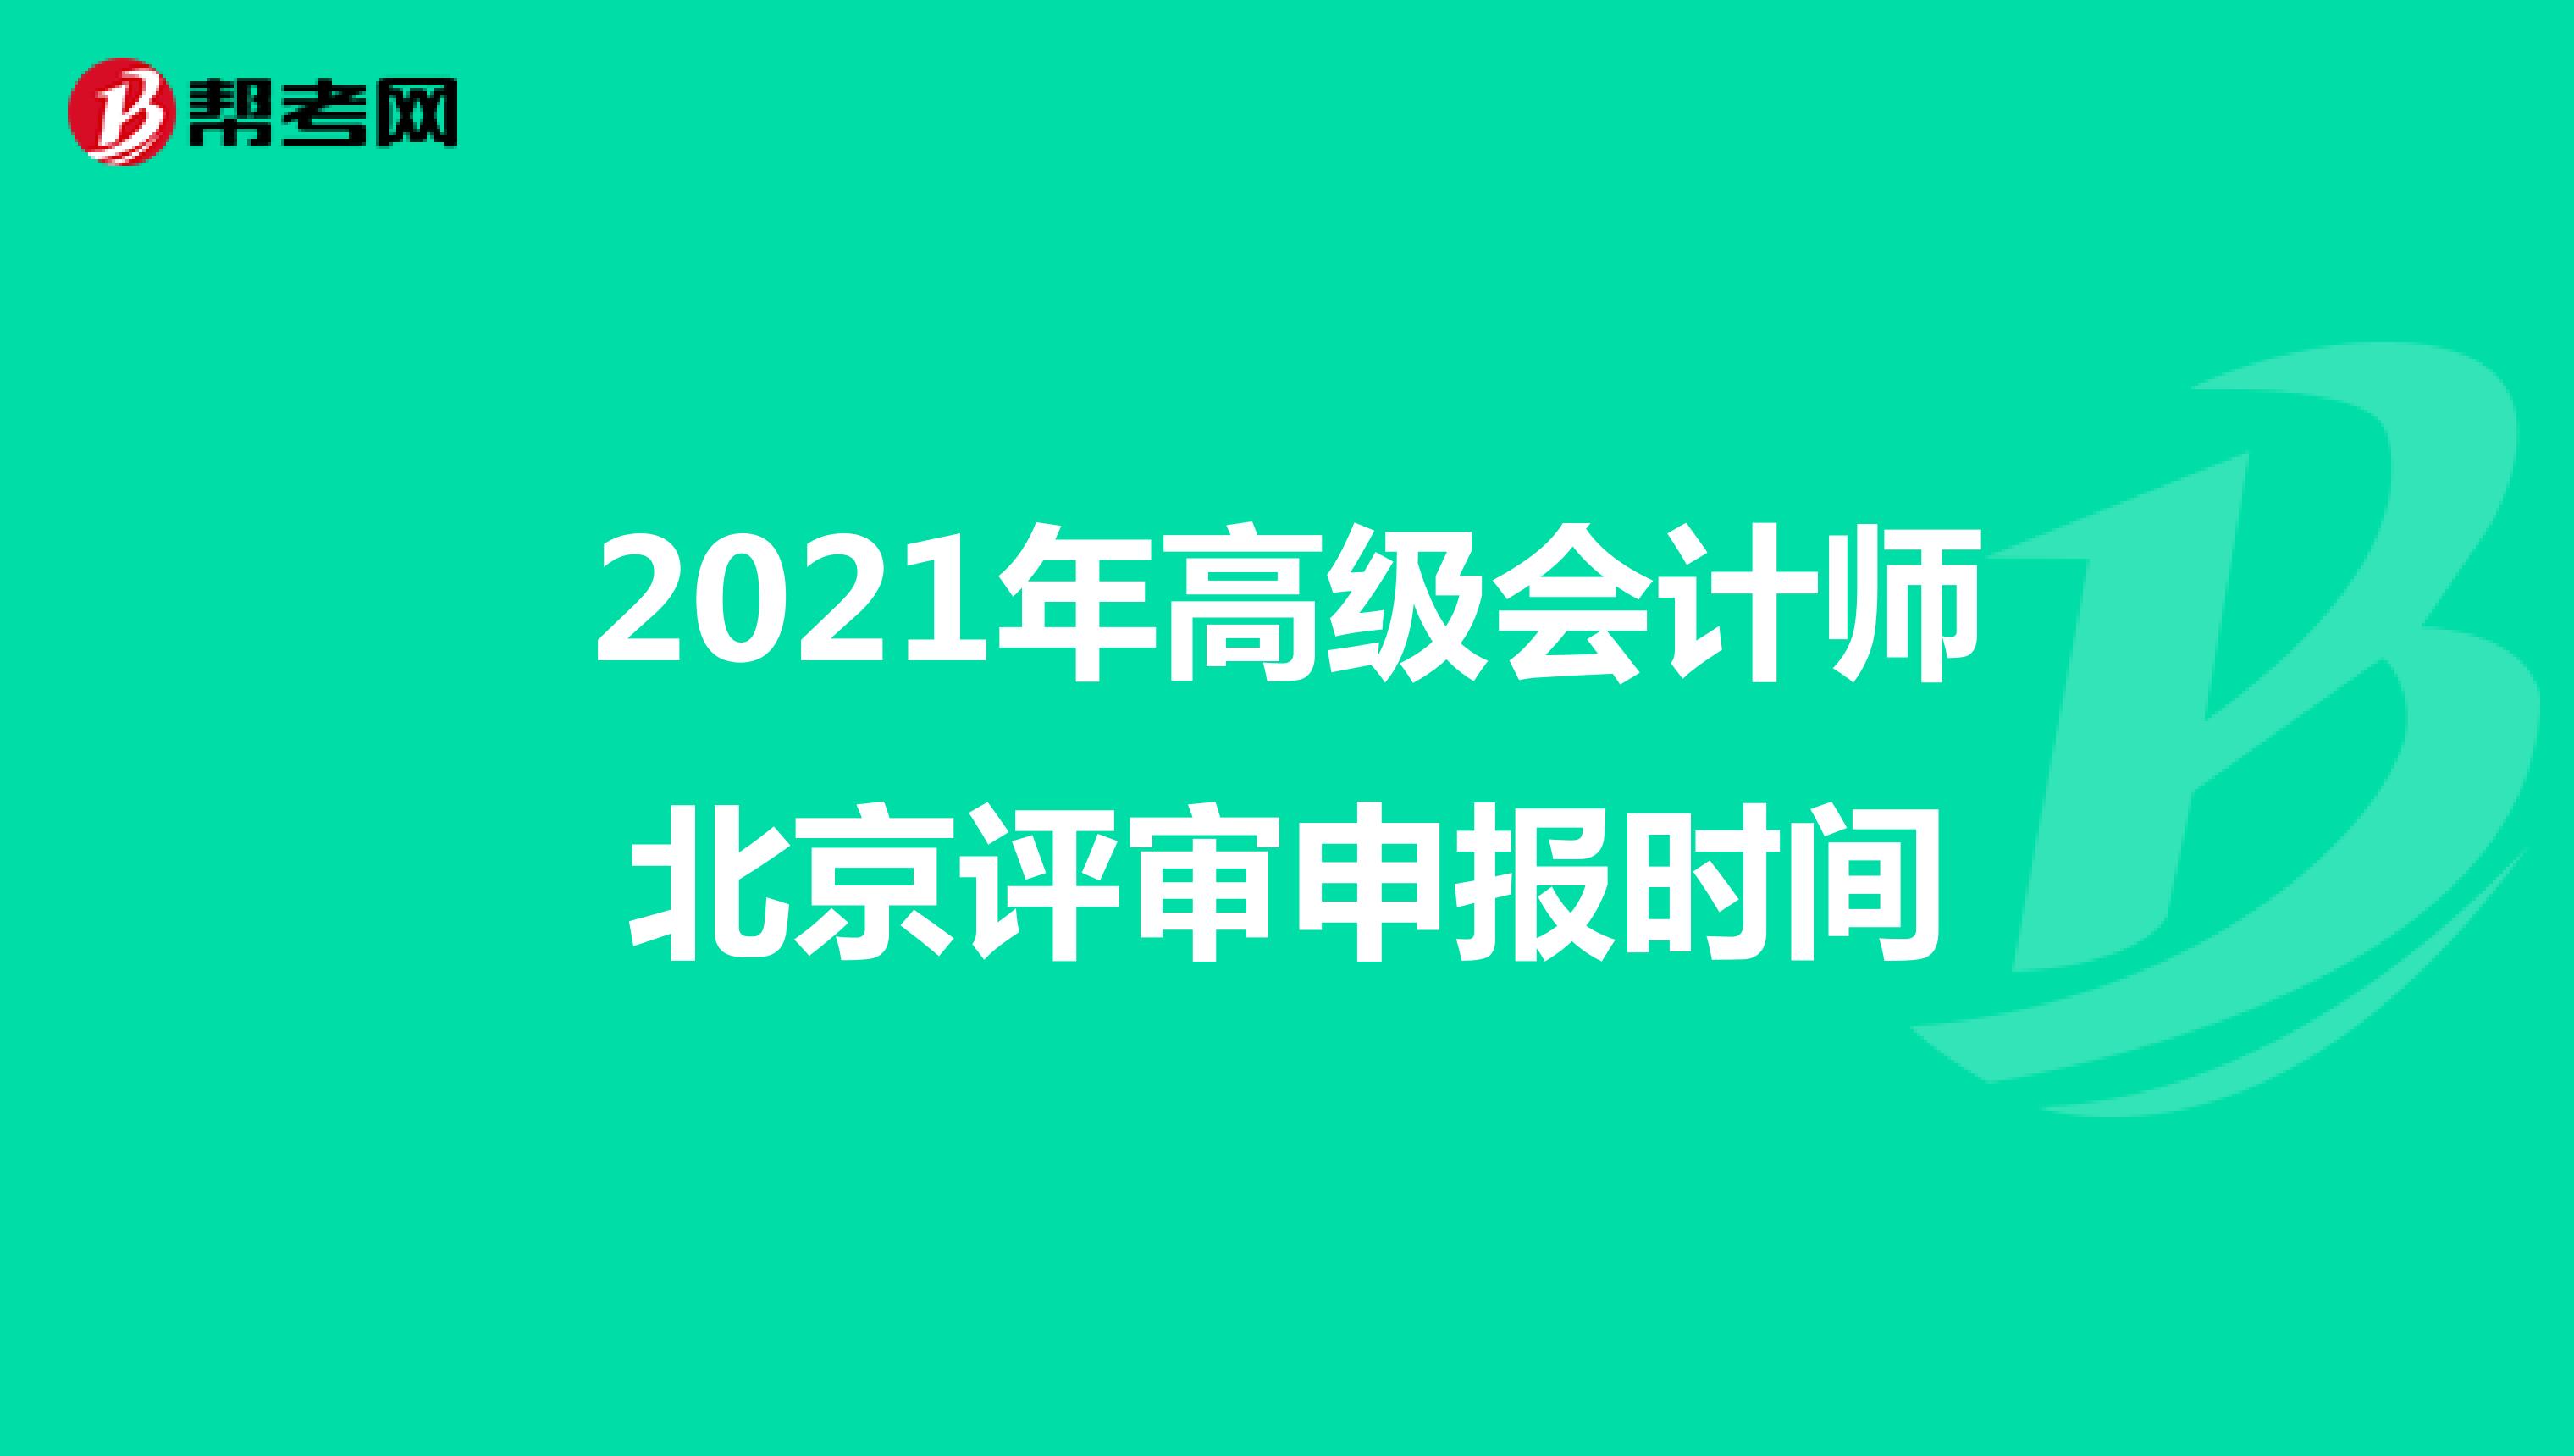 2021年高级会计师北京评审申报时间